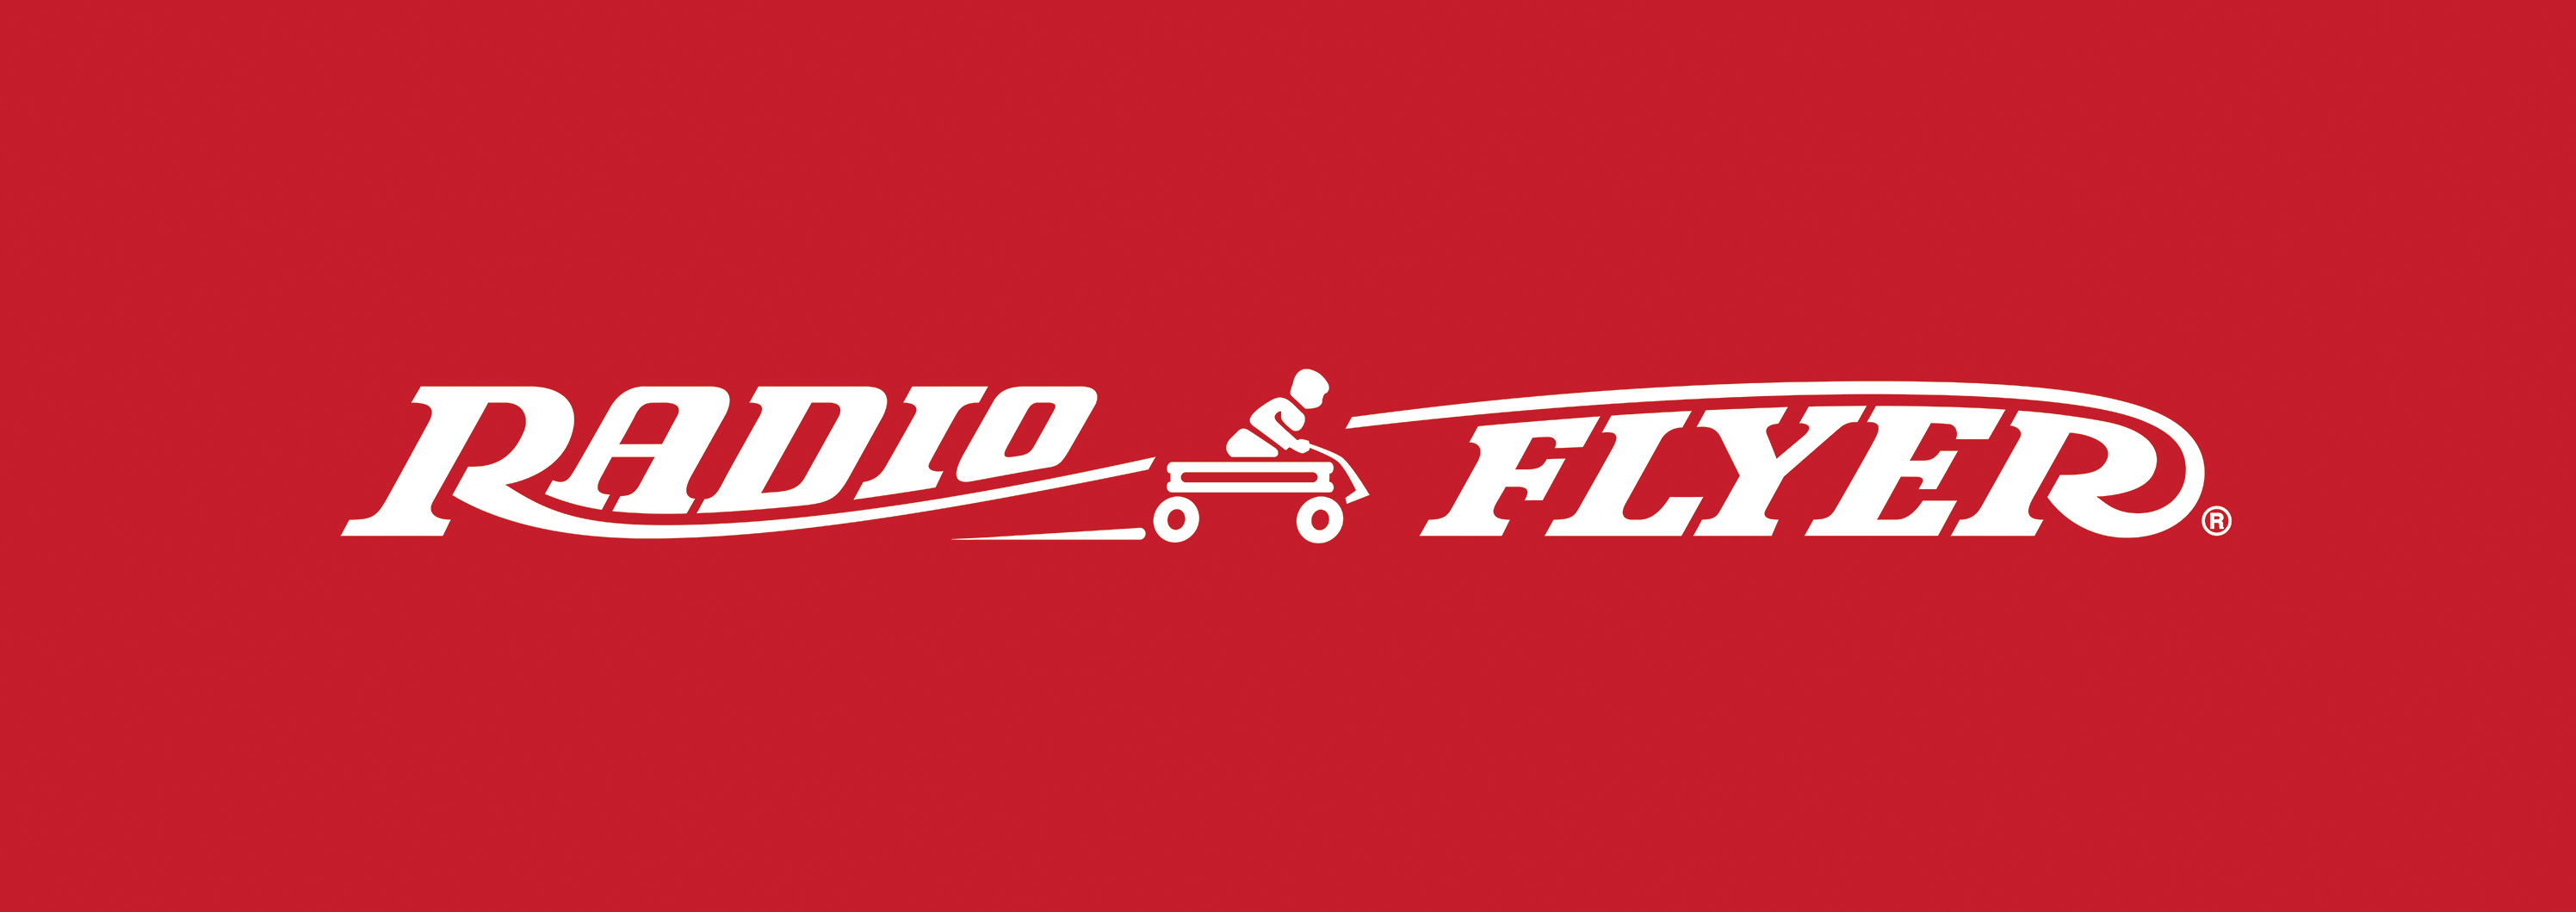 radio-flyer-logo